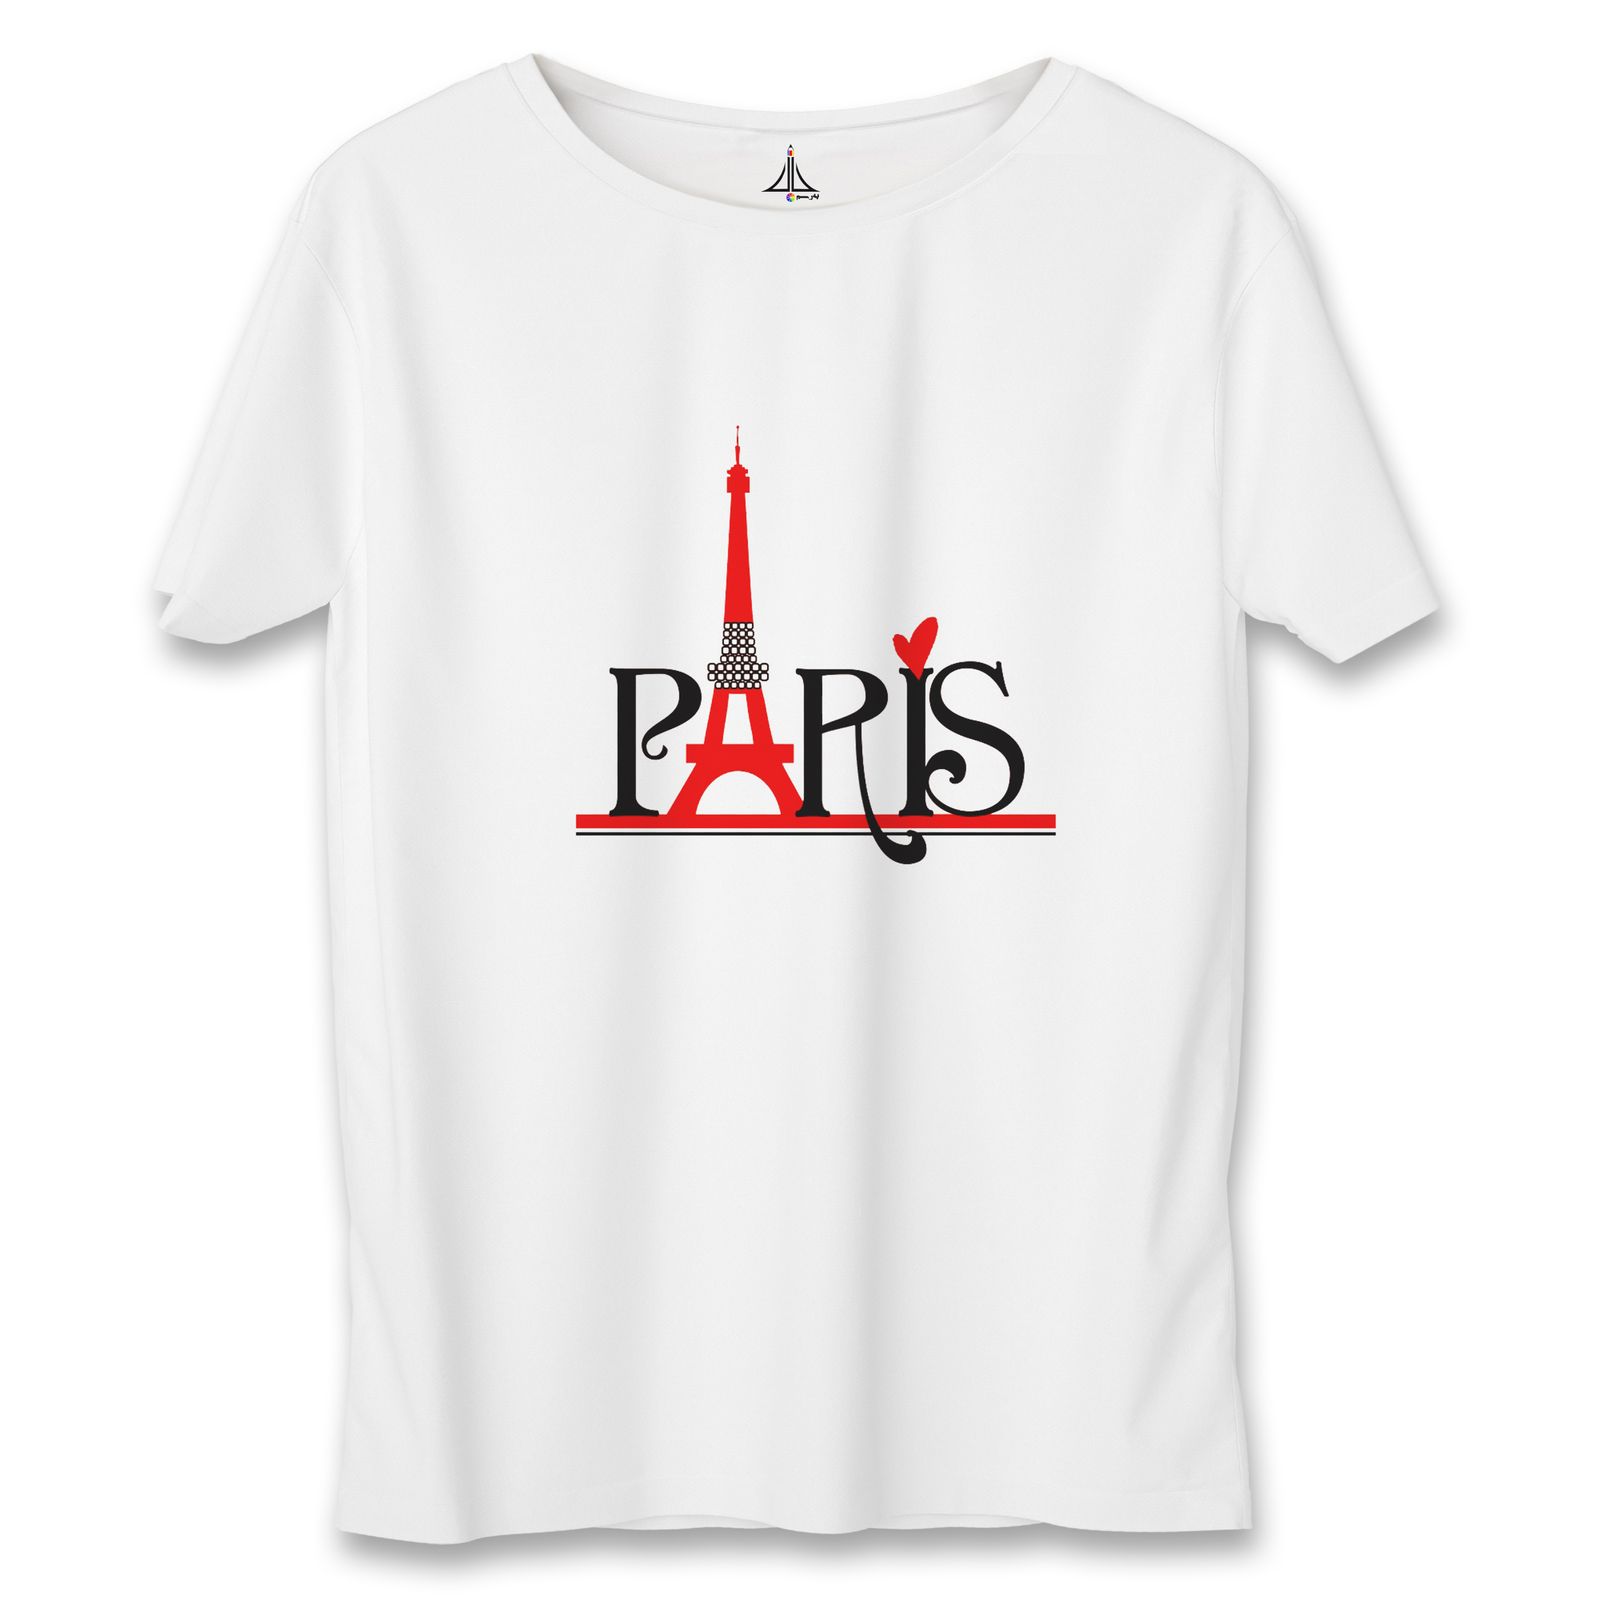 تی شرت مردانه به رسم طرح پاریس کد 3376 -  - 4